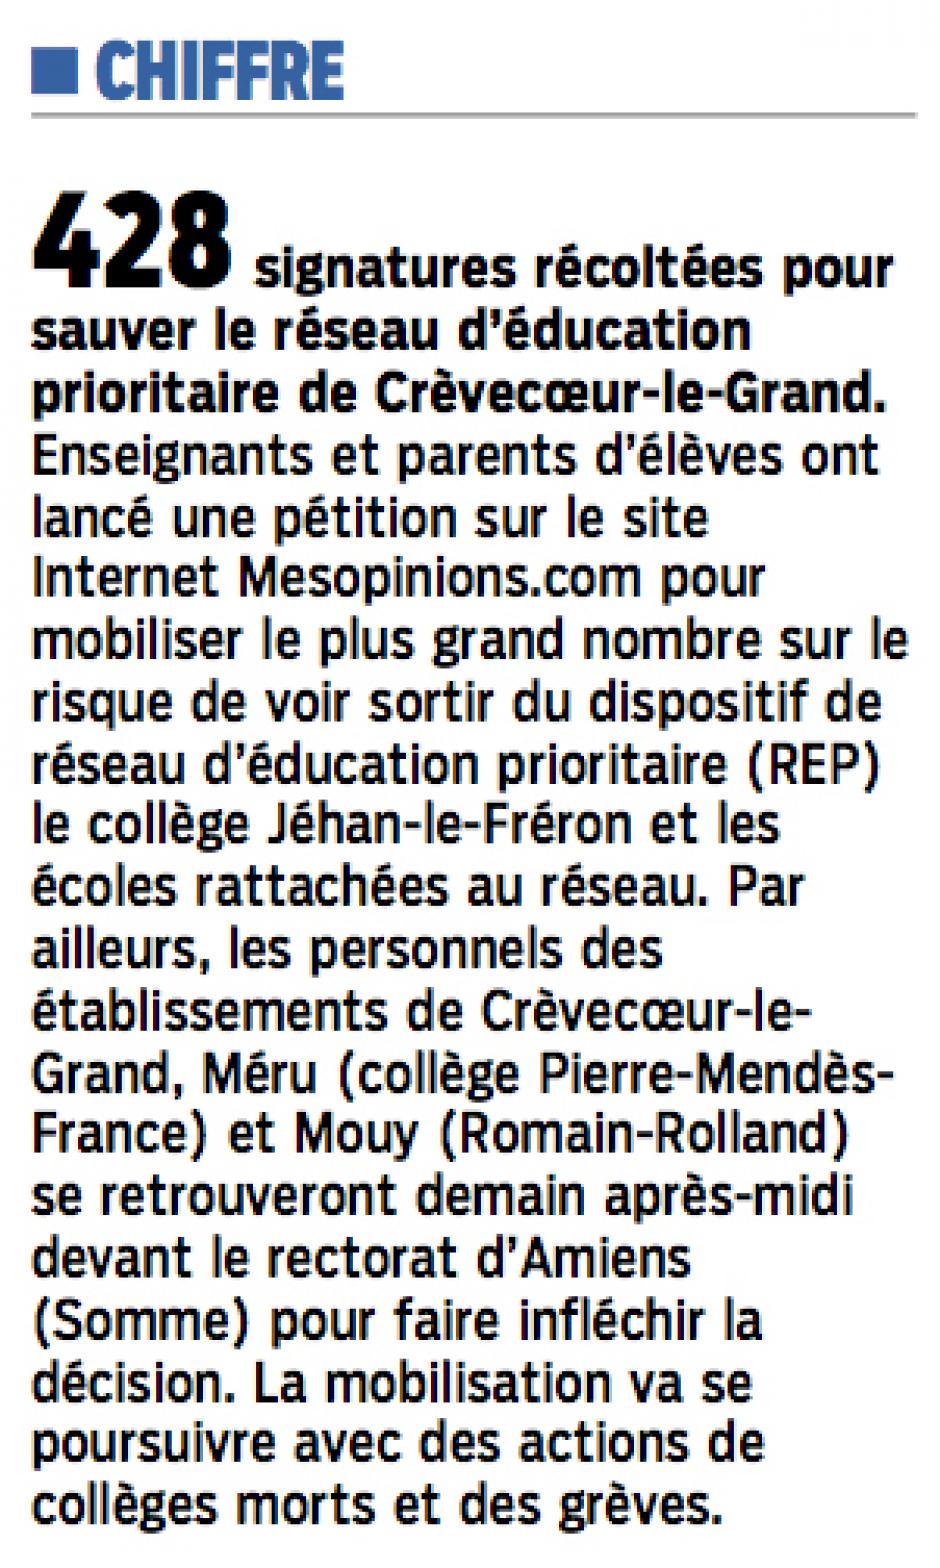 20141209-LeP-Crèvecœur-le-Grand-428 signatures récoltées pour sauver le réseau d'éducation prioritaire